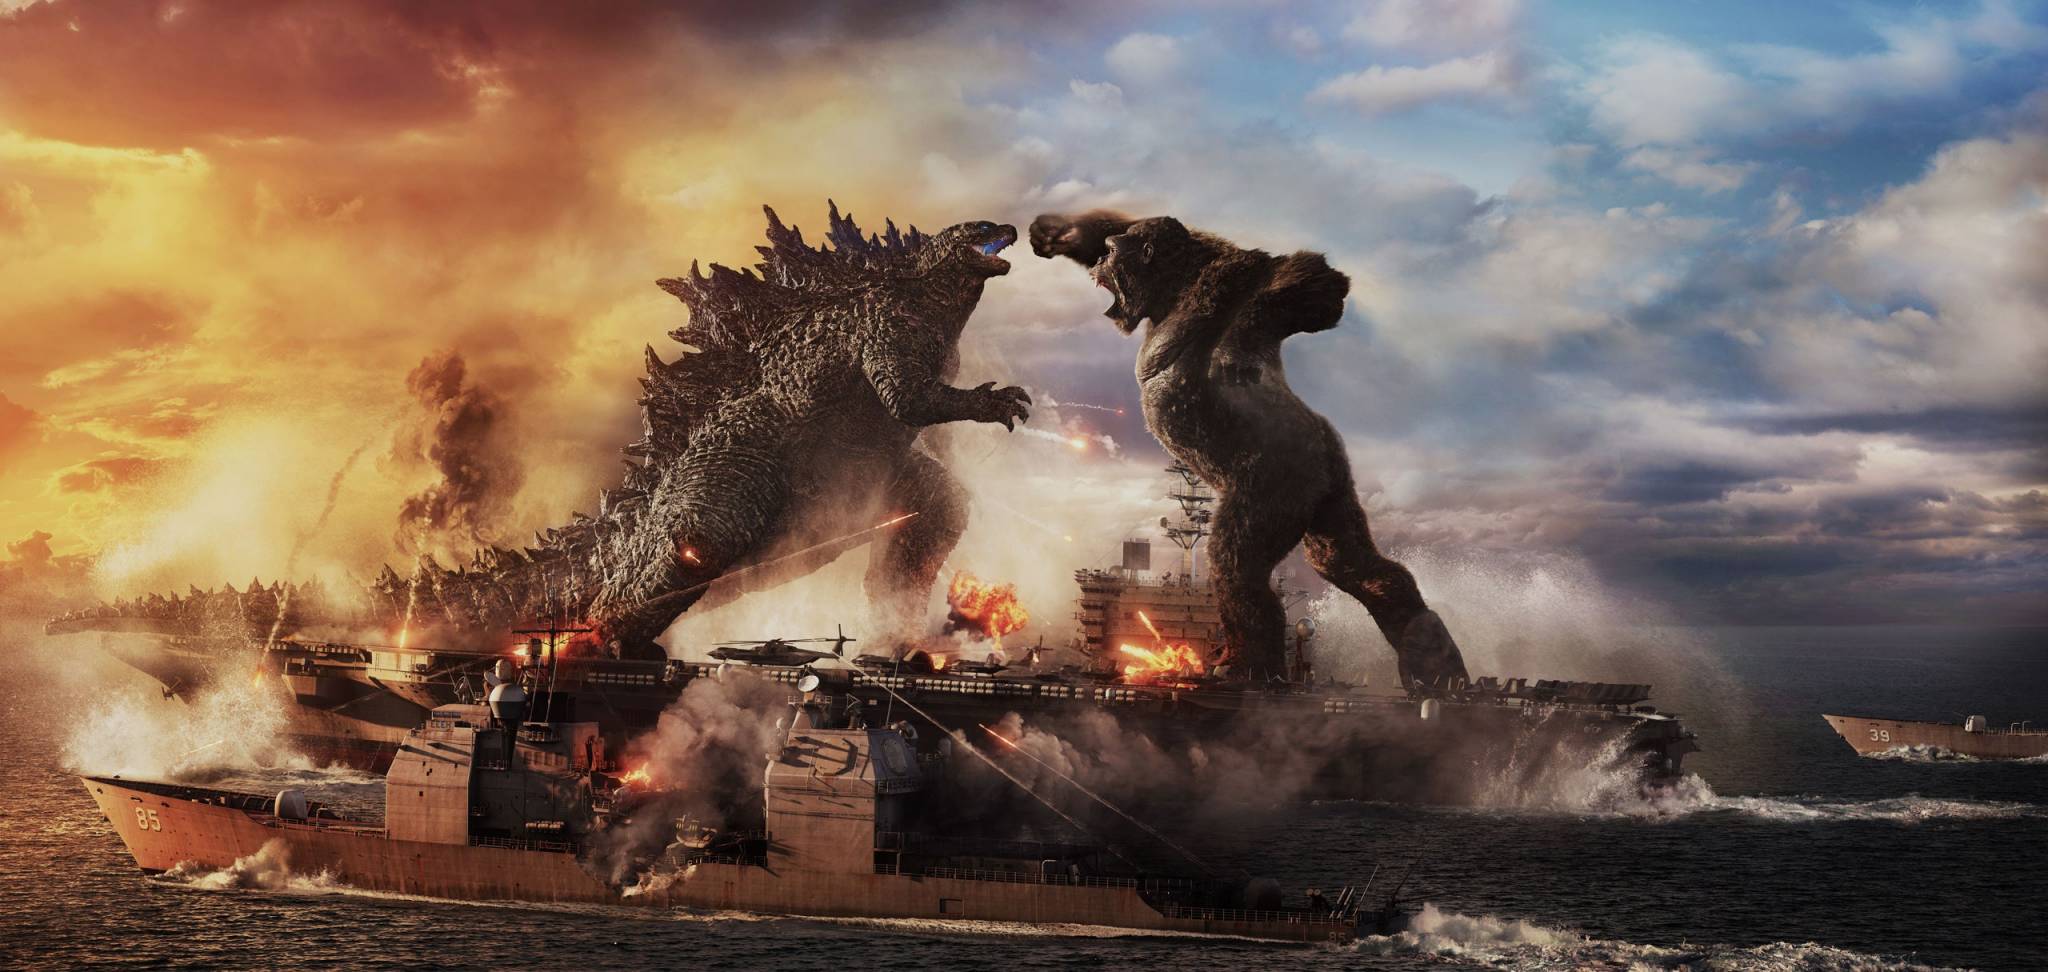 Godzilla VS Kong